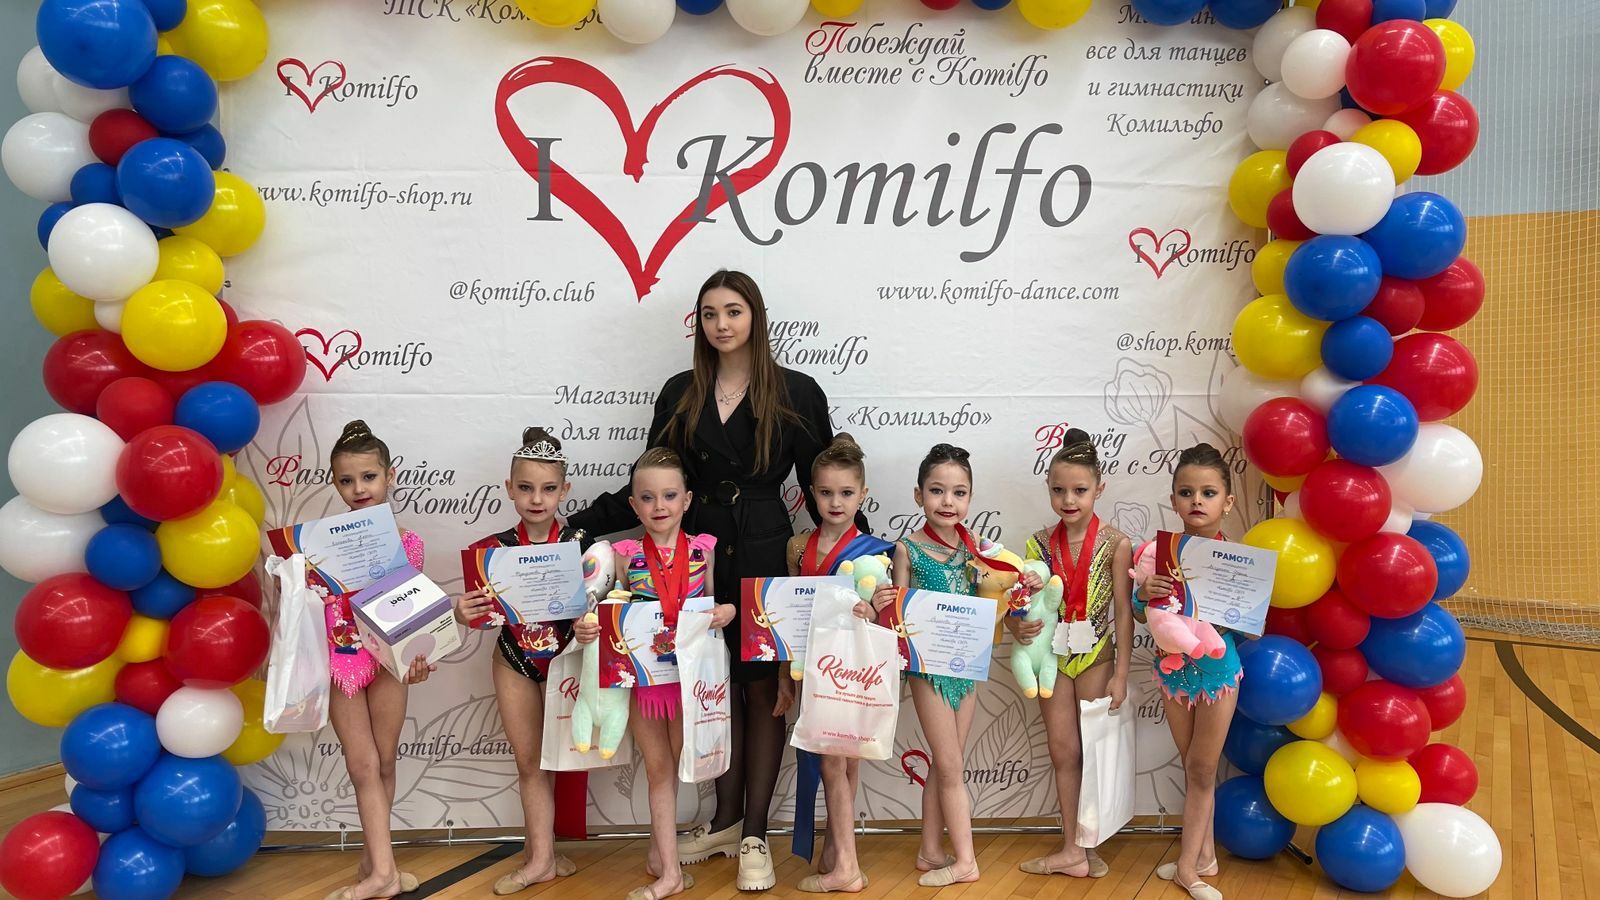 Гимнастки успешно выступили на турнире по художественной гимнастике в Московской области